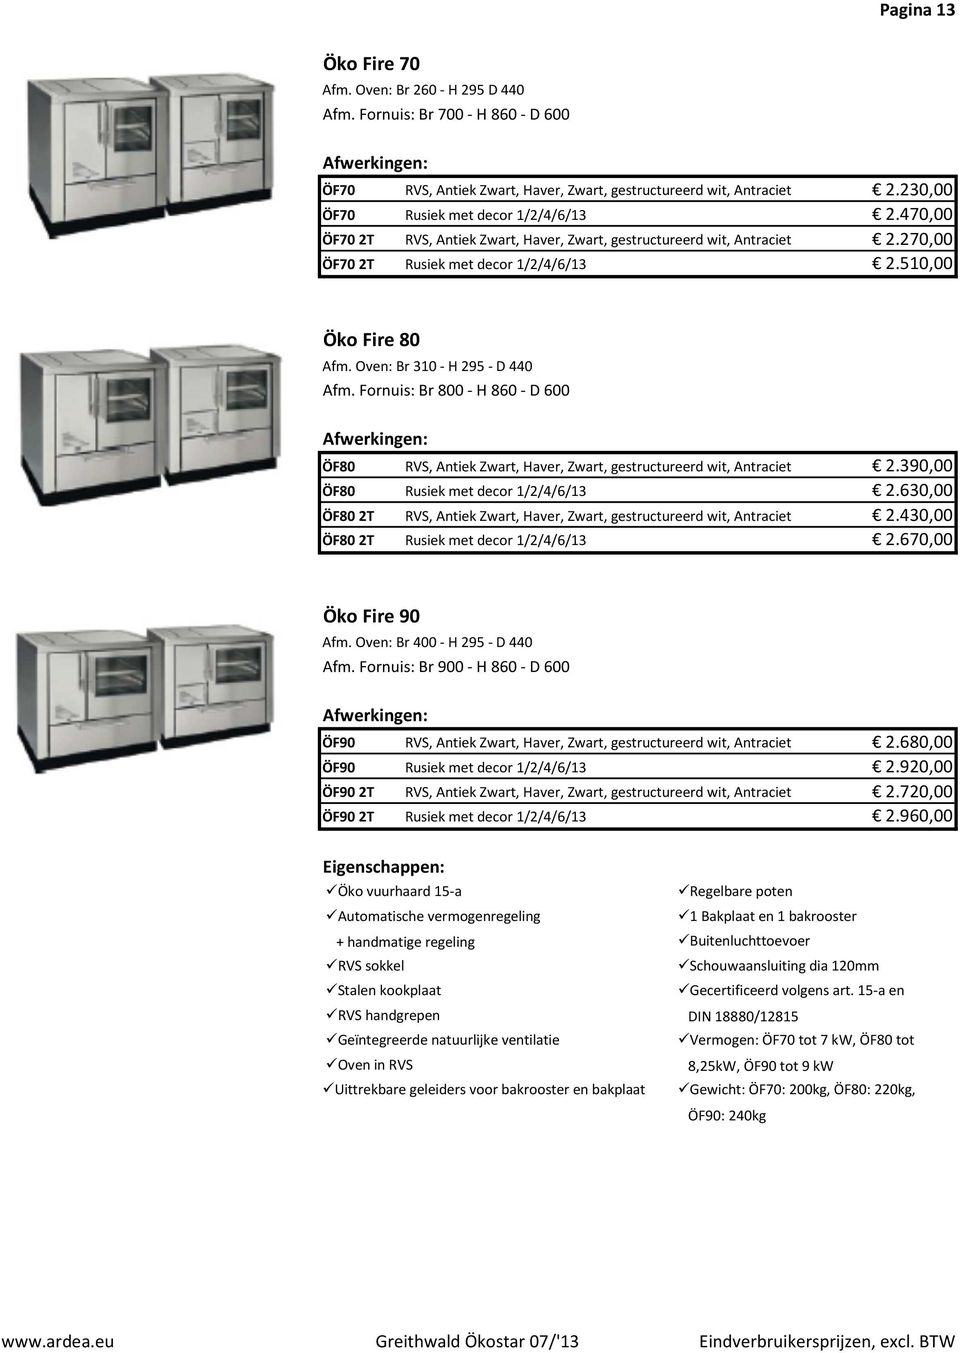 Oven: Br 310 - H 295 - D 440 Afm. Fornuis: Br 800 - H 860 - D 600 Afwerkingen: ÖF80 RVS, Antiek Zwart, Haver, Zwart, gestructureerd wit, Antraciet 2.390,00 ÖF80 Rusiek met decor 1/2/4/6/13 2.